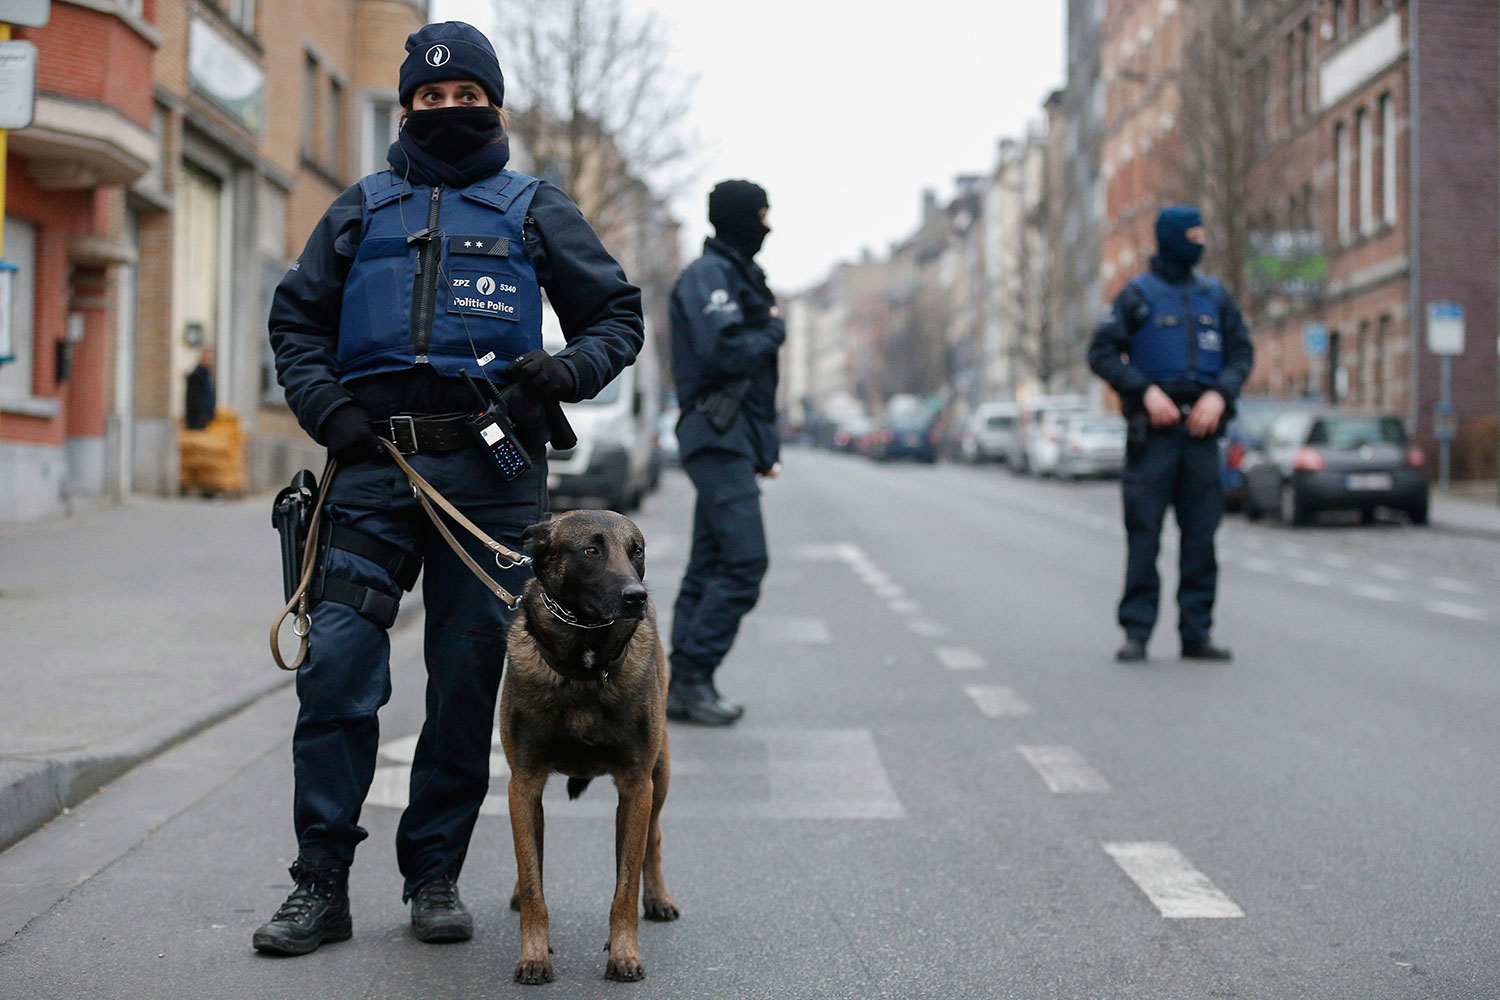  Autoridades belgas detienen a sospechoso de atentados